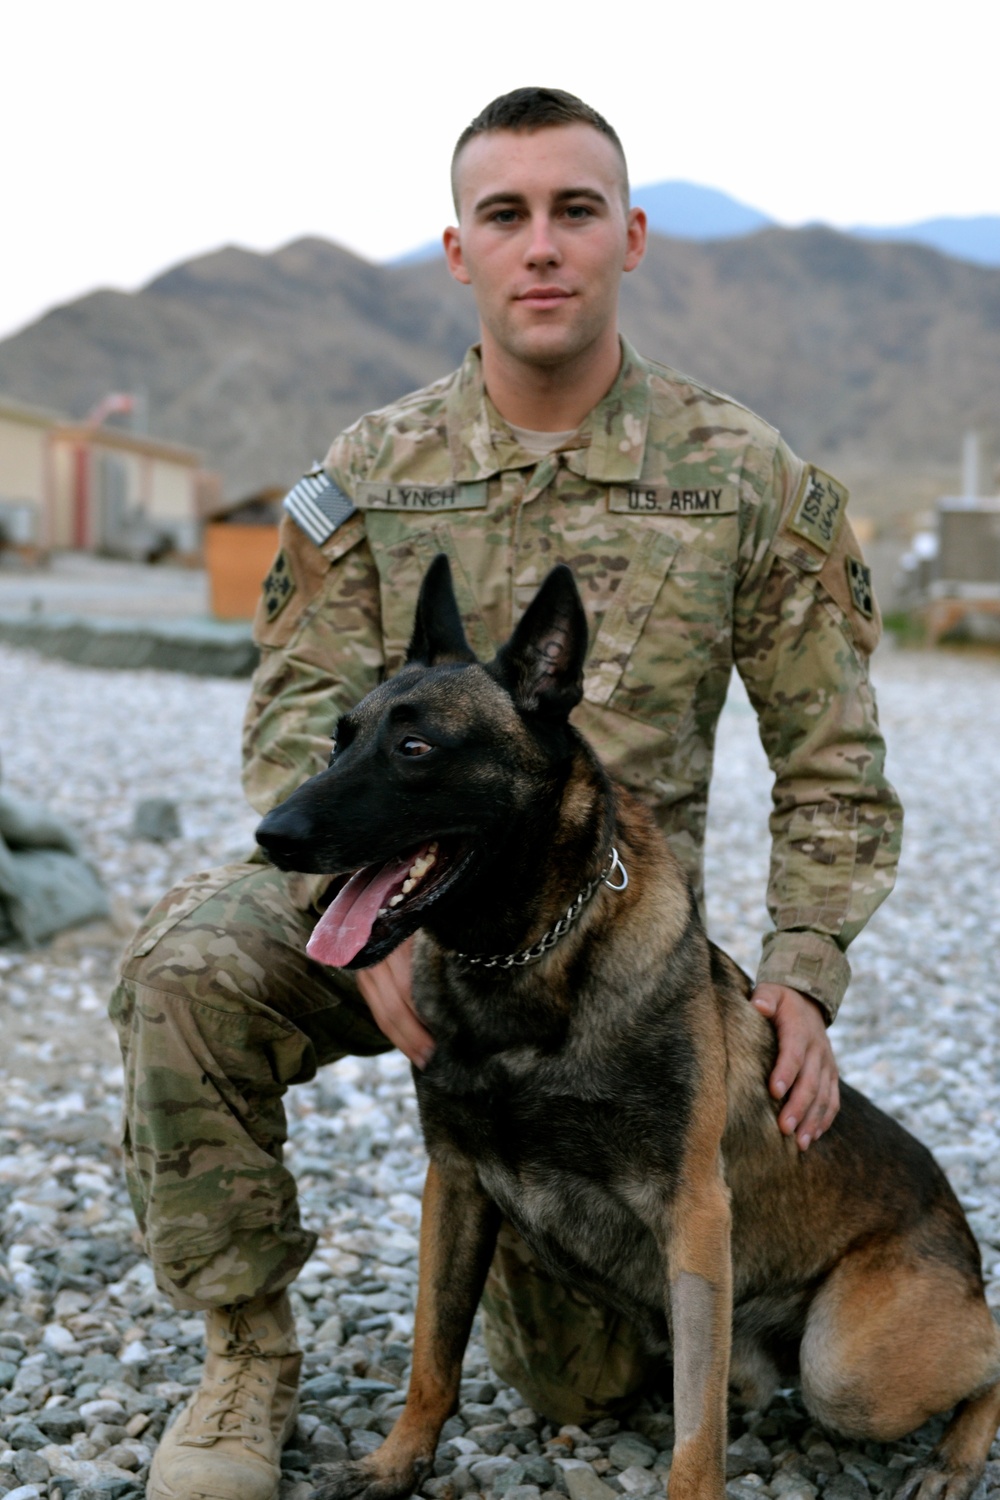 Why we serve: US Army Spc. Ian Lynch